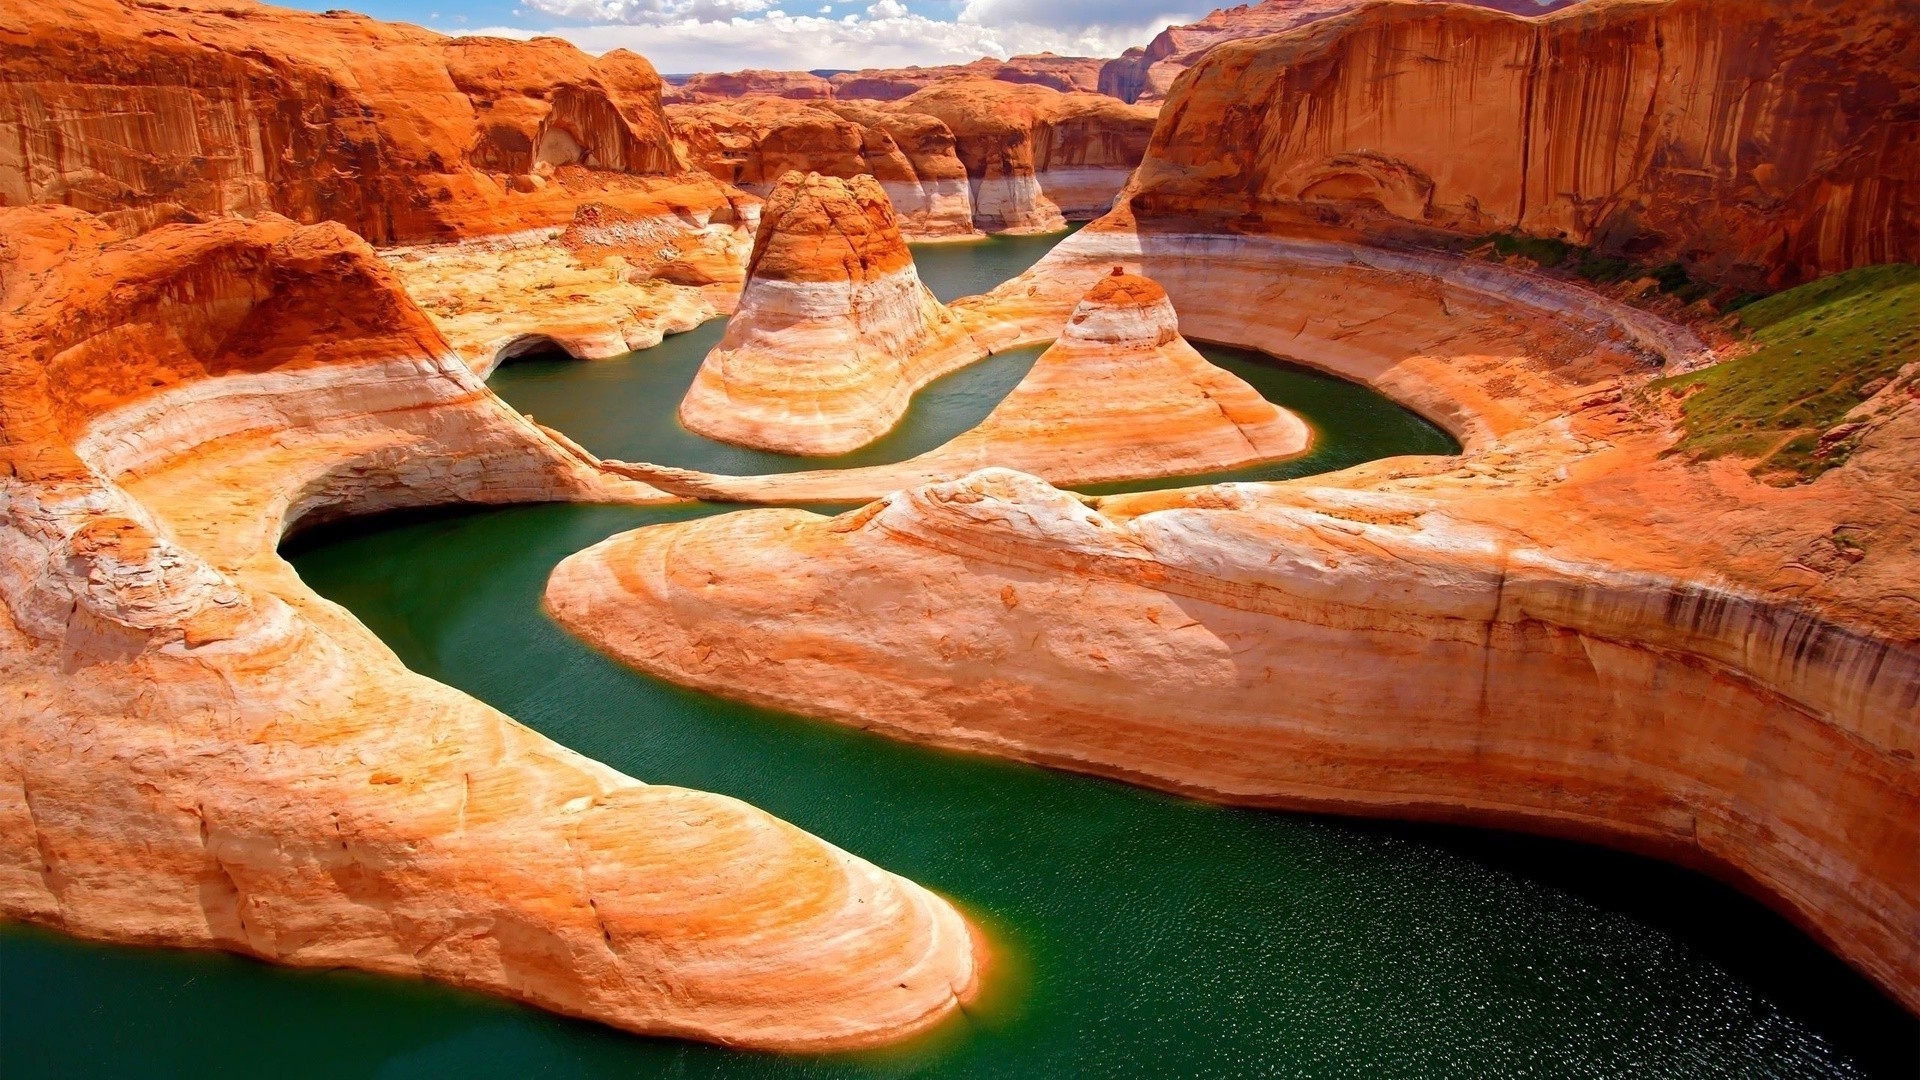 знаменитые места путешествия пейзаж рок каньон живописный природа воды геология на открытом воздухе